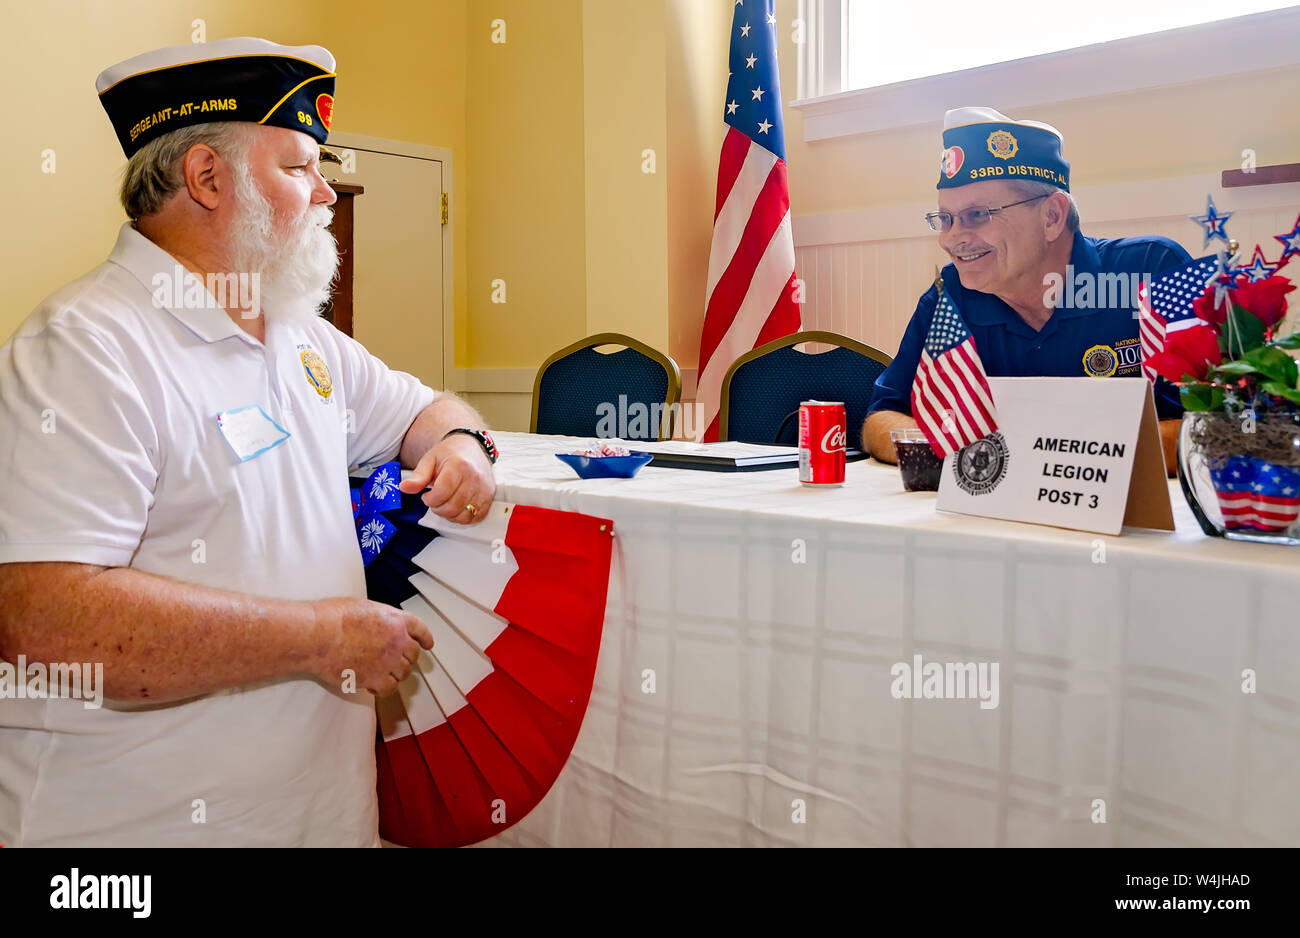 Les députés parlent de la Légion américaine au cours de l'après 3 journée portes ouvertes, le 21 juillet 2019, à Mobile, Alabama. Banque D'Images